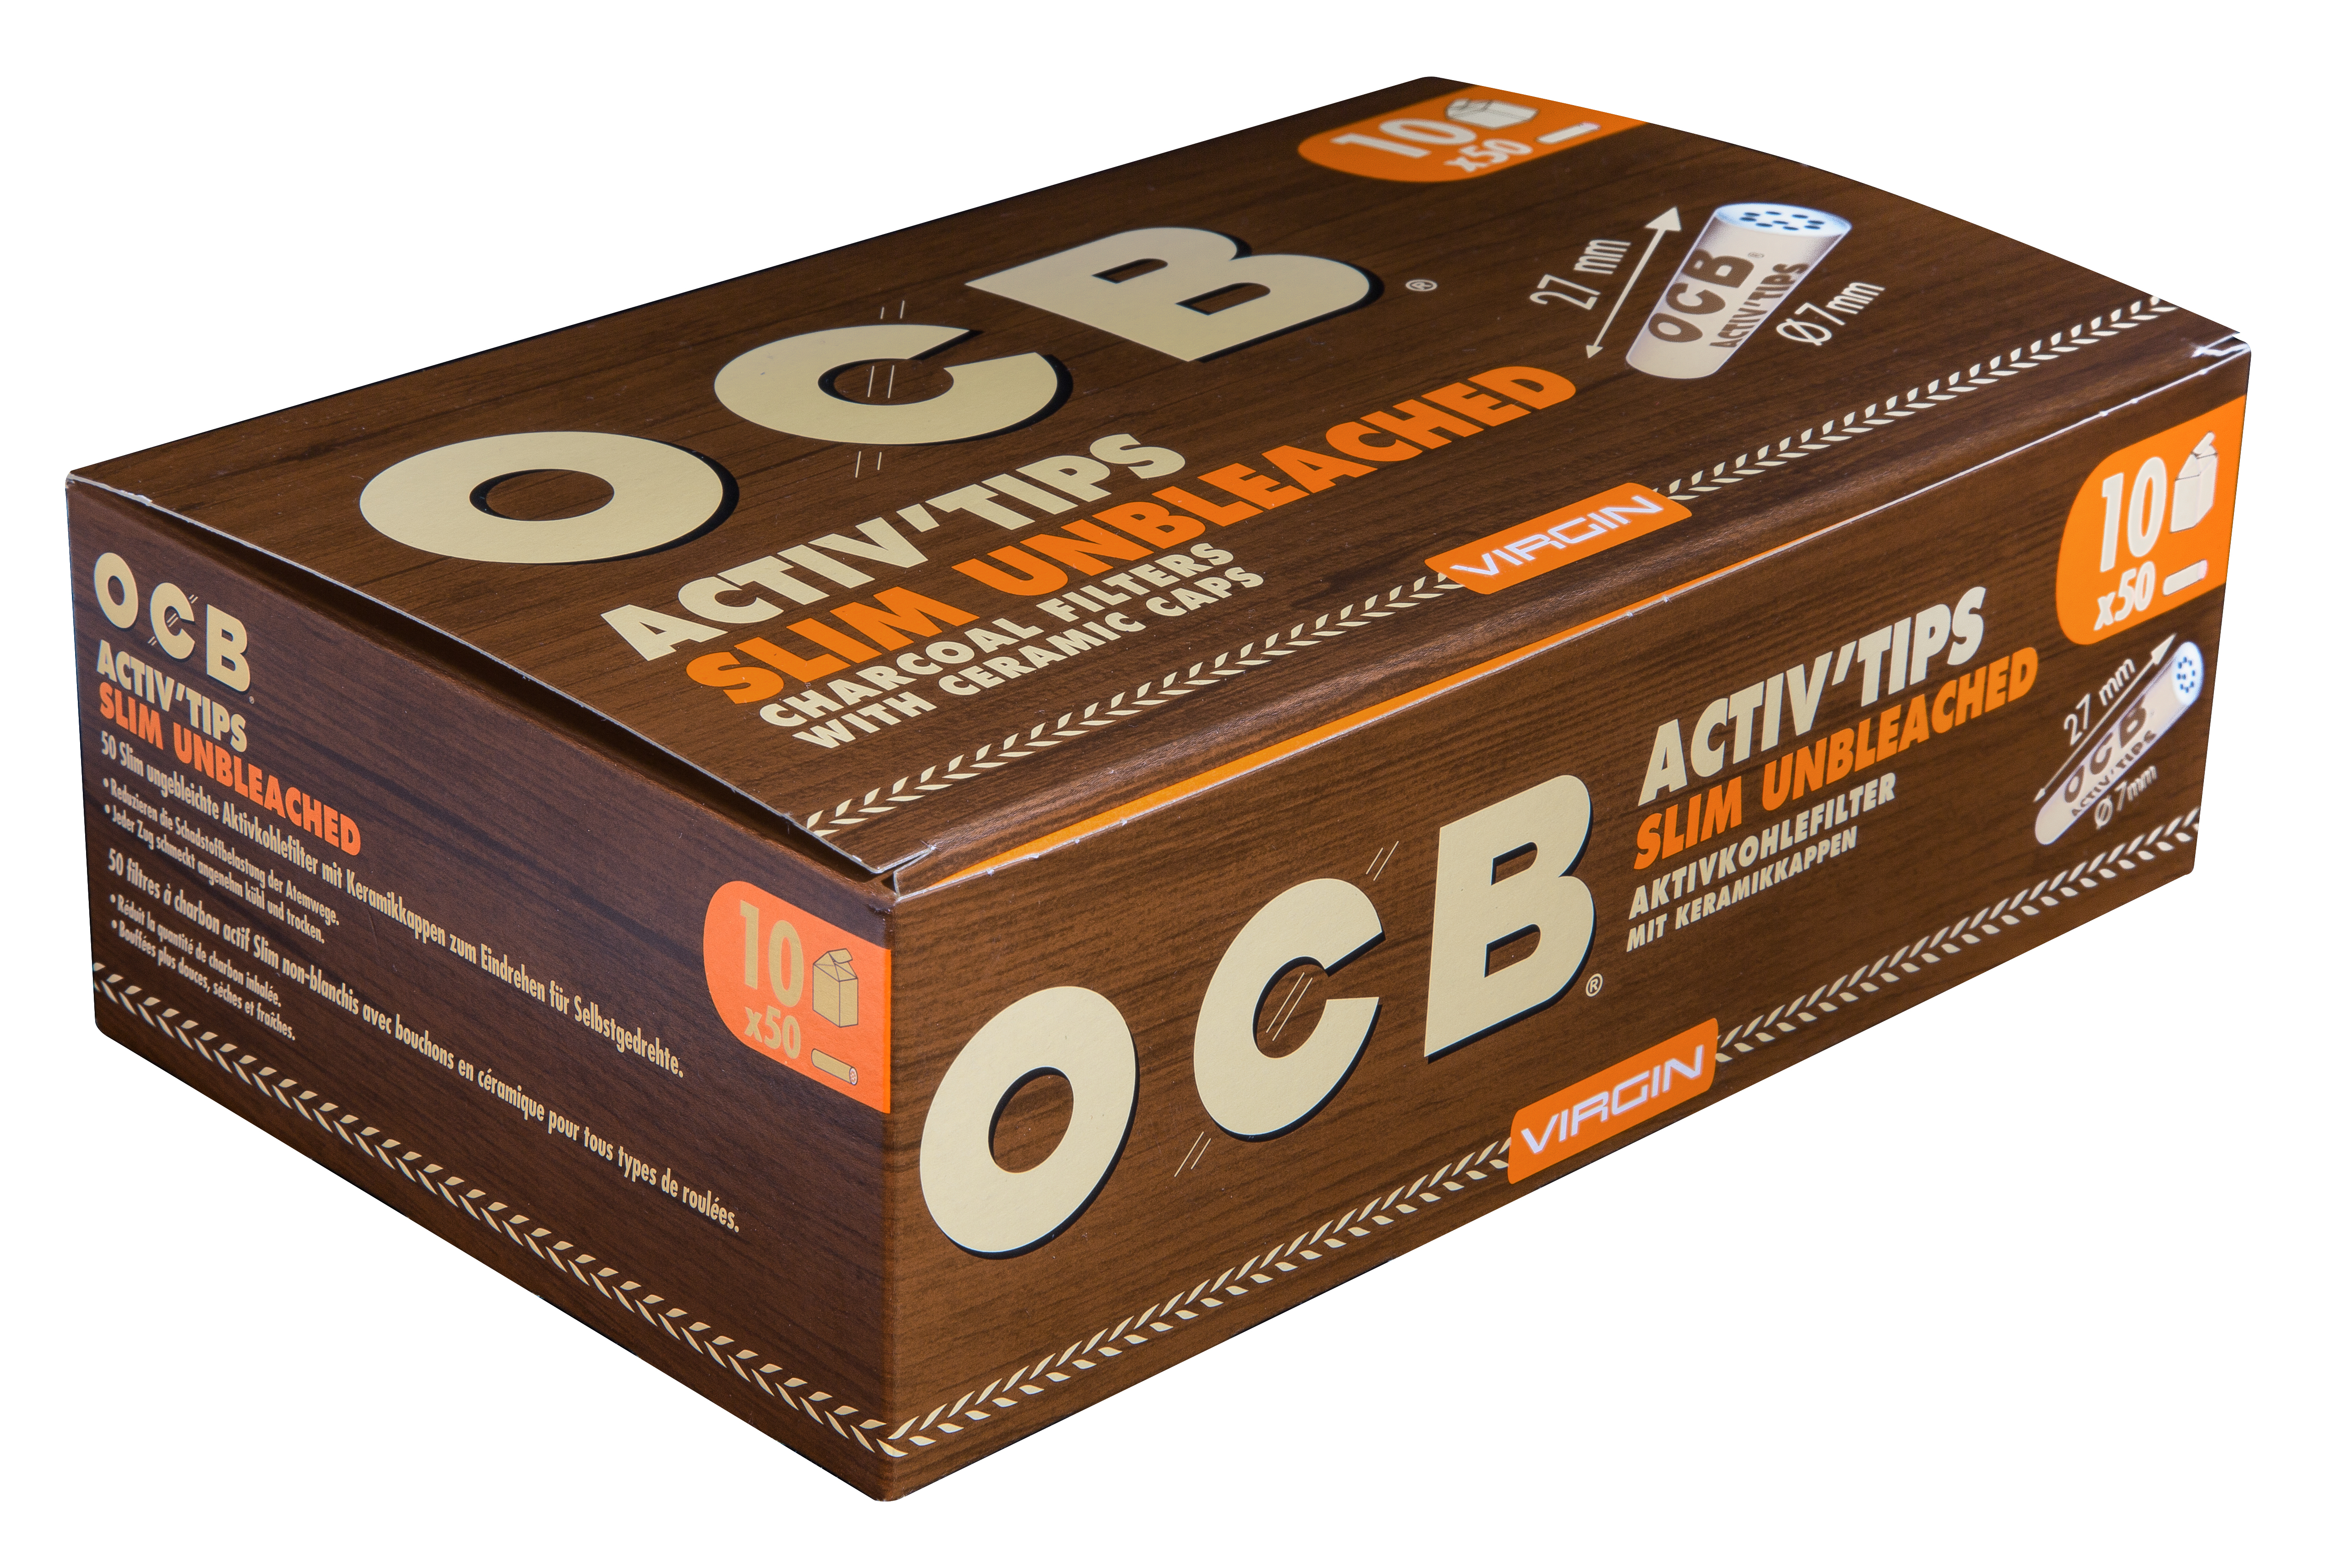 OCB Activ Tips Slim Unbleached 7mm 50er